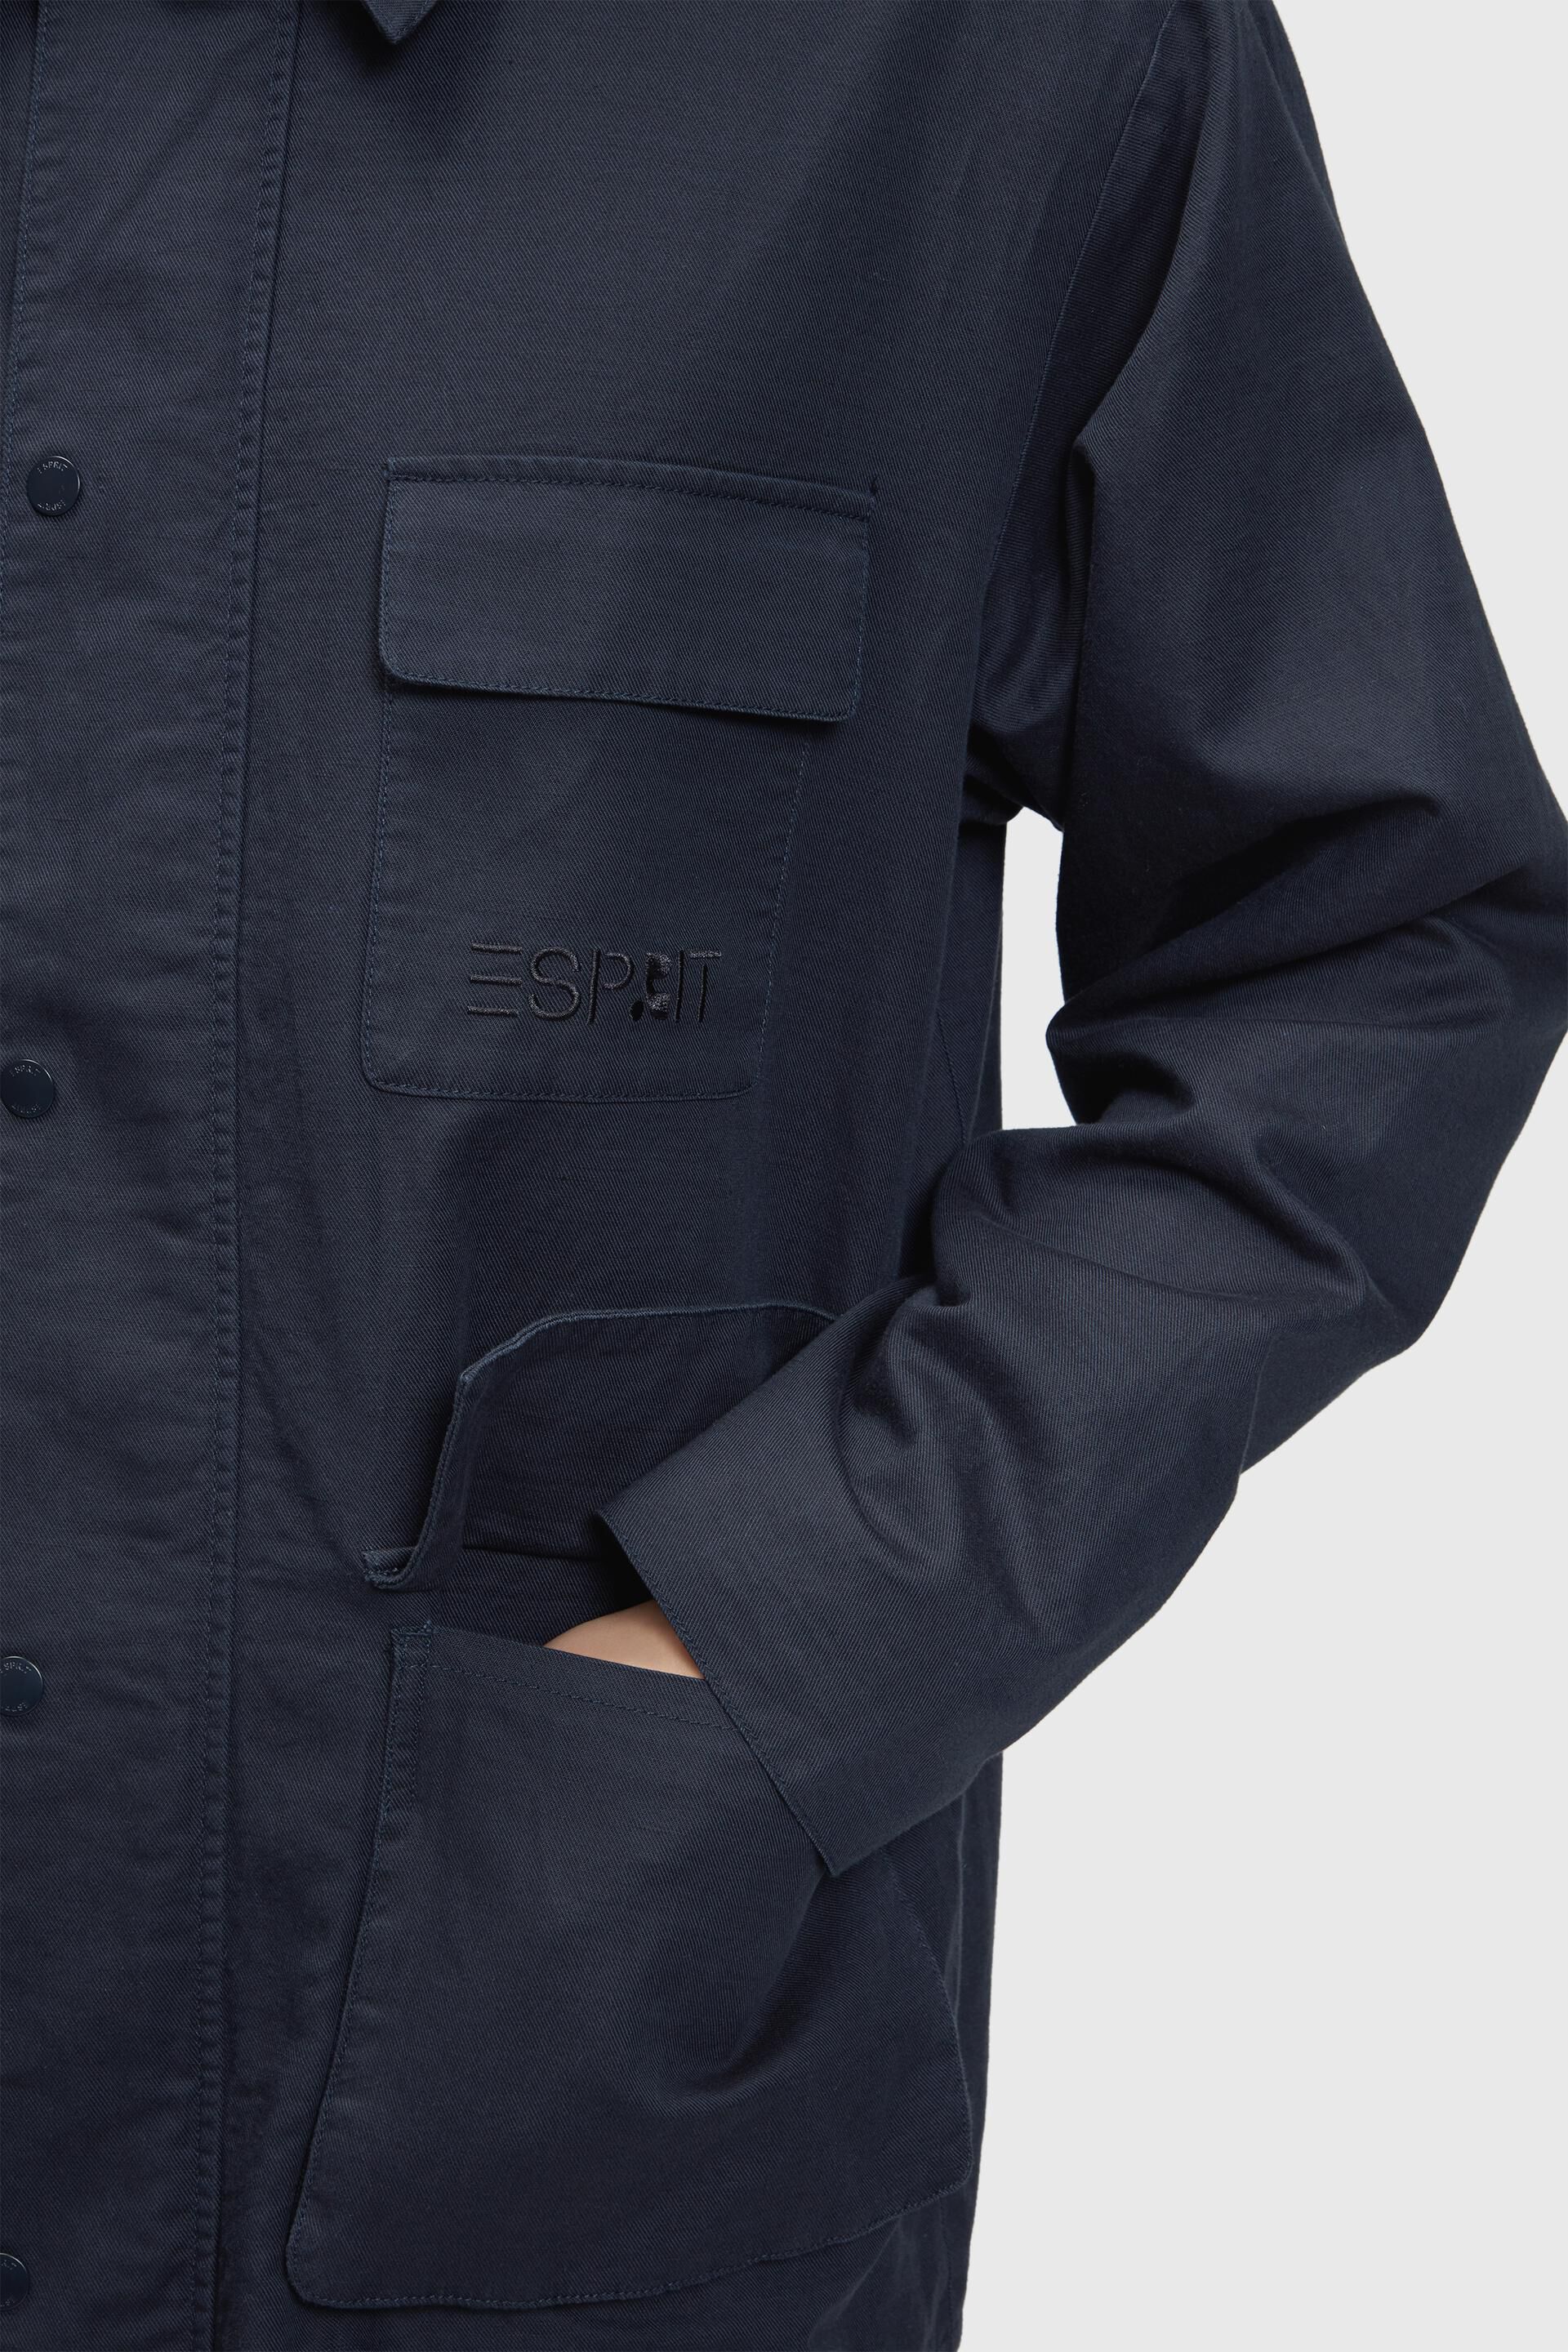 Esprit with Linen shacket blend zipper